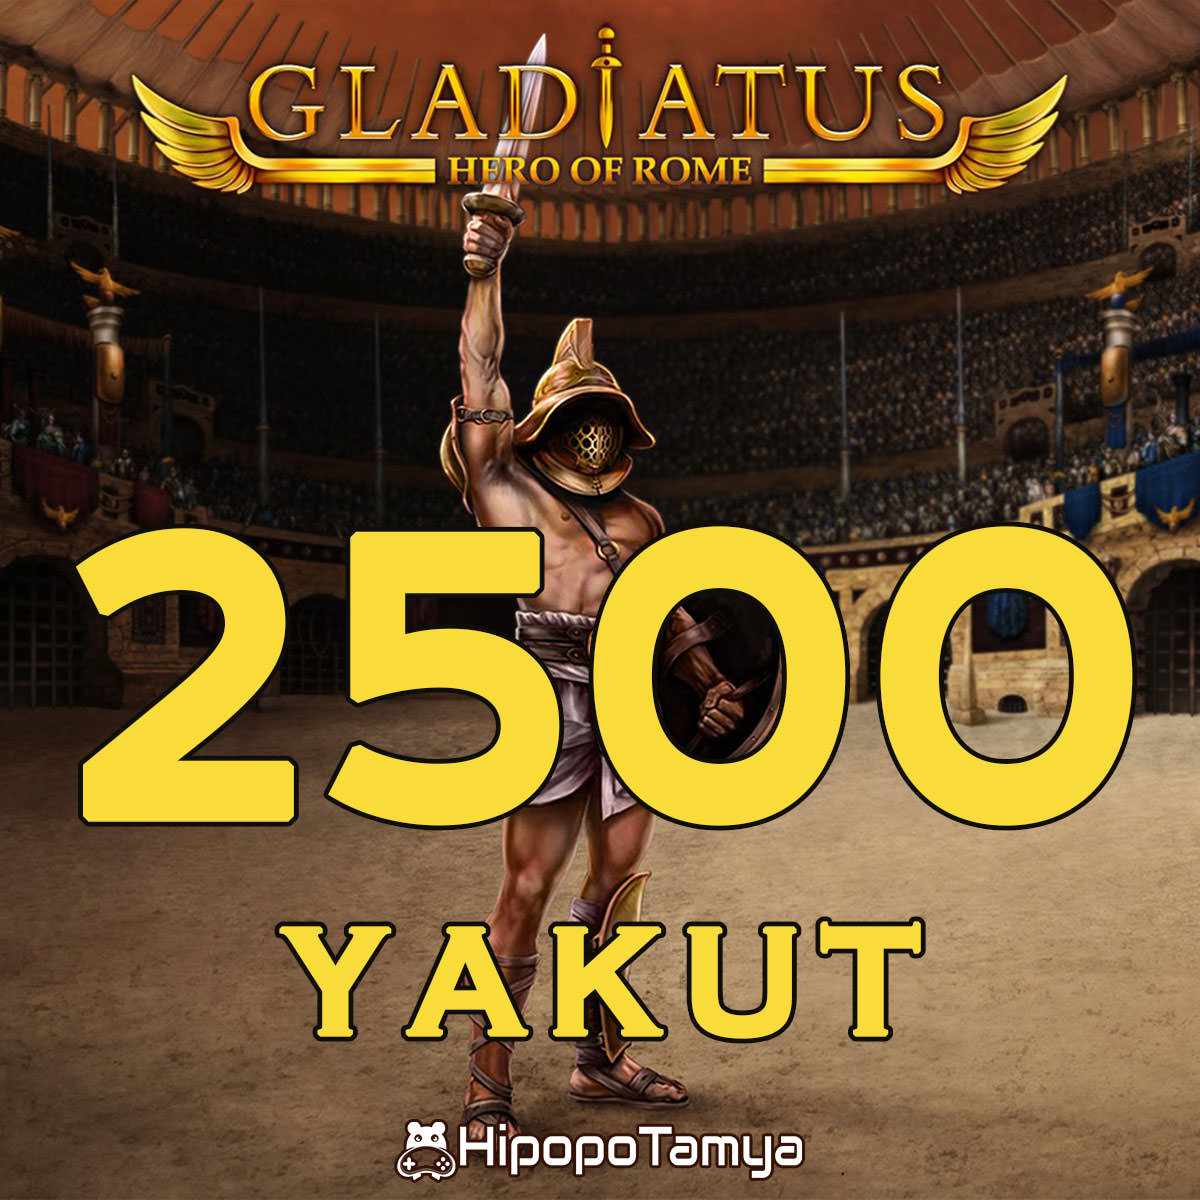 Gladiatus 2500 Yakut